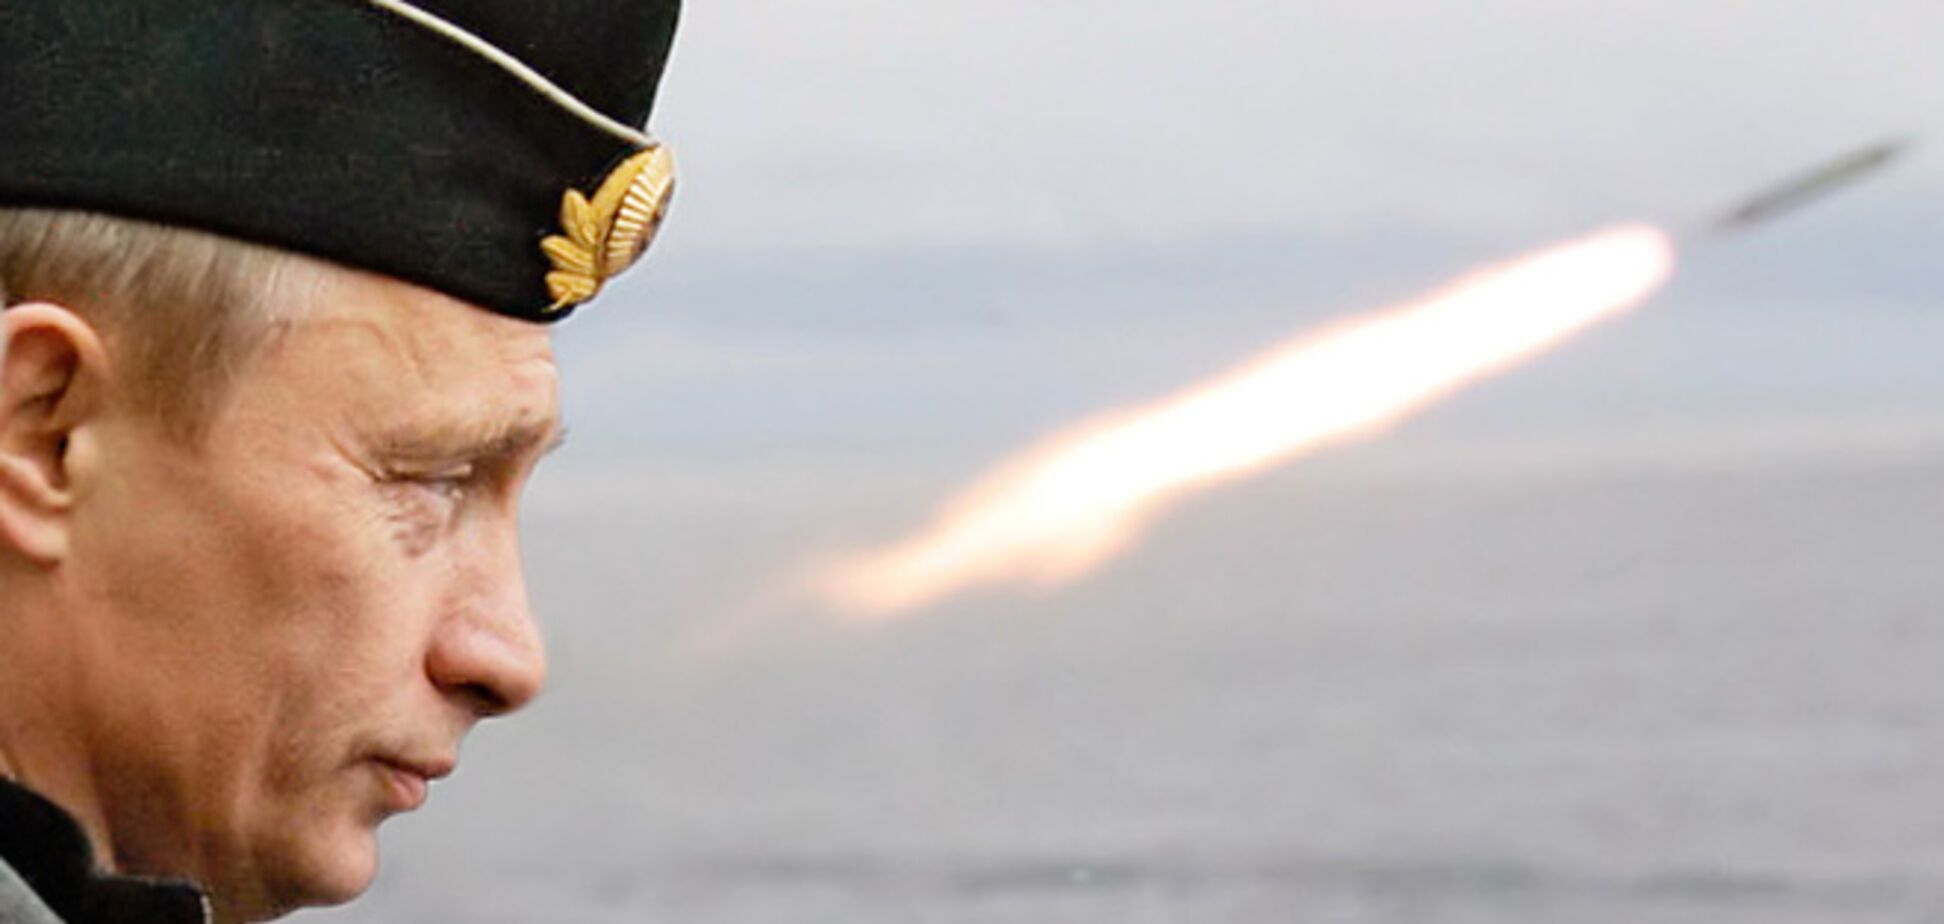 Путин экспериментирует с самыми необычными видами войны против Украины - эксперт